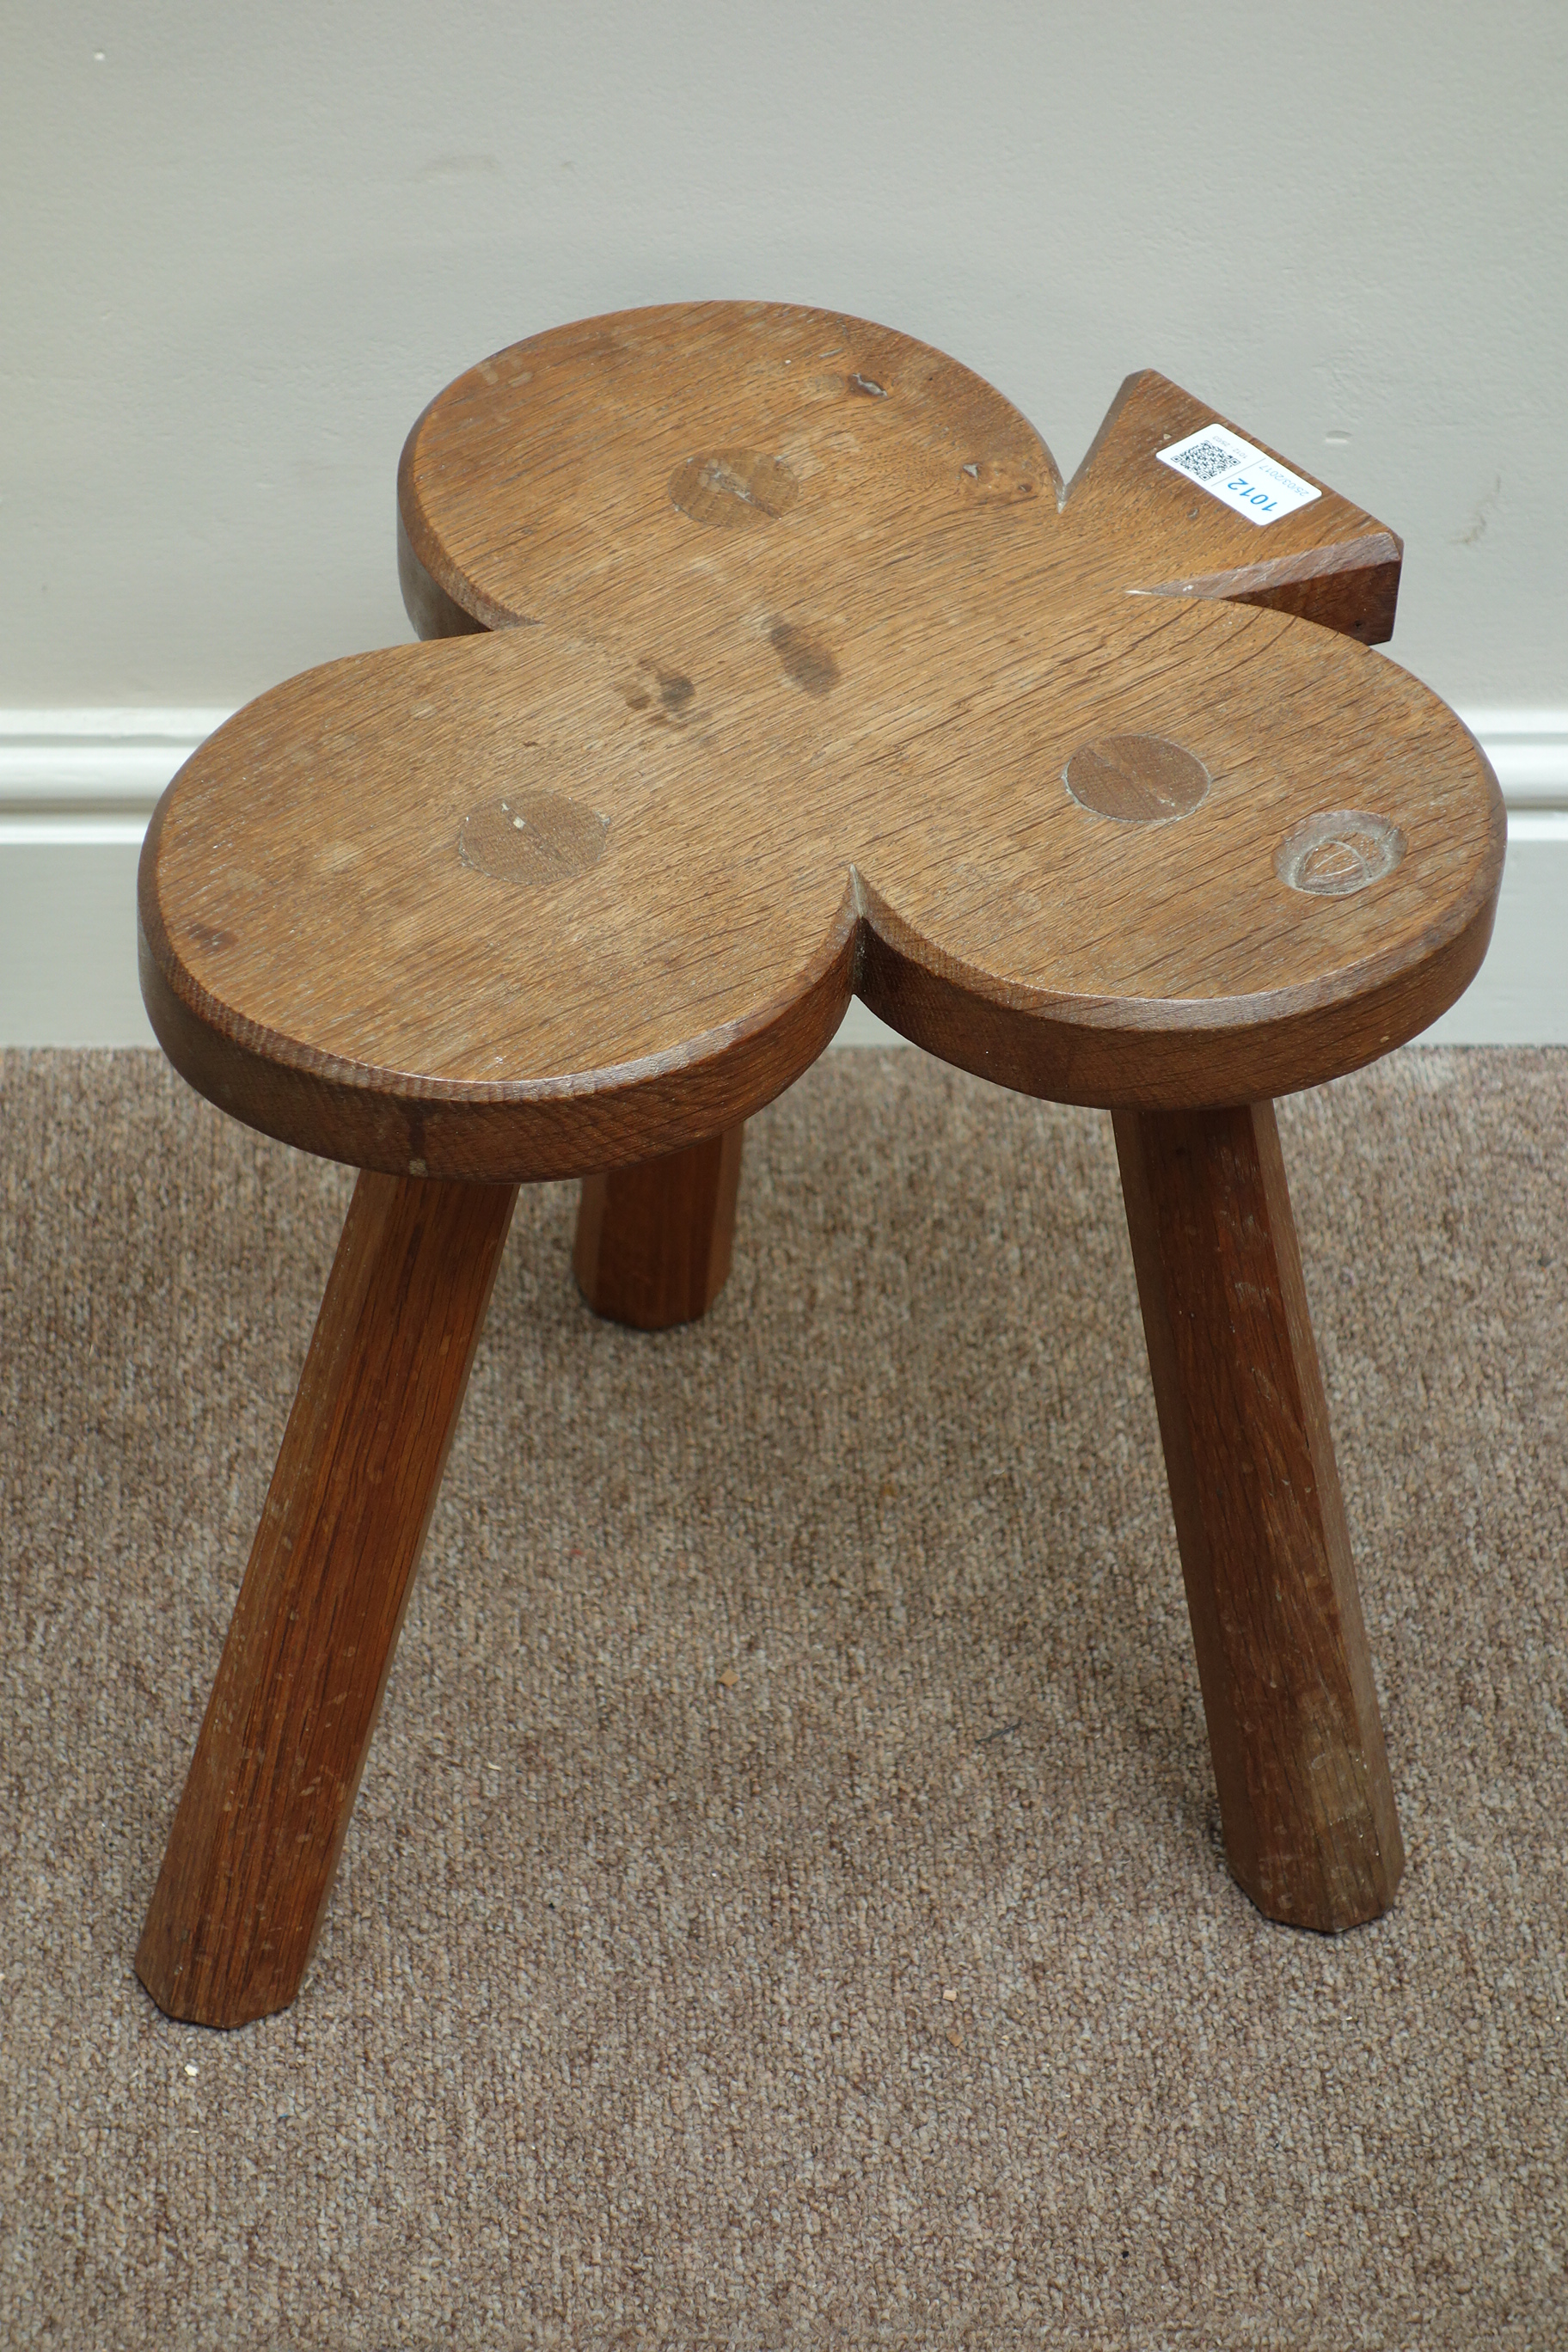 'Acornman' oak stool in the shape of a club, by Alan Granger of Brandsby,